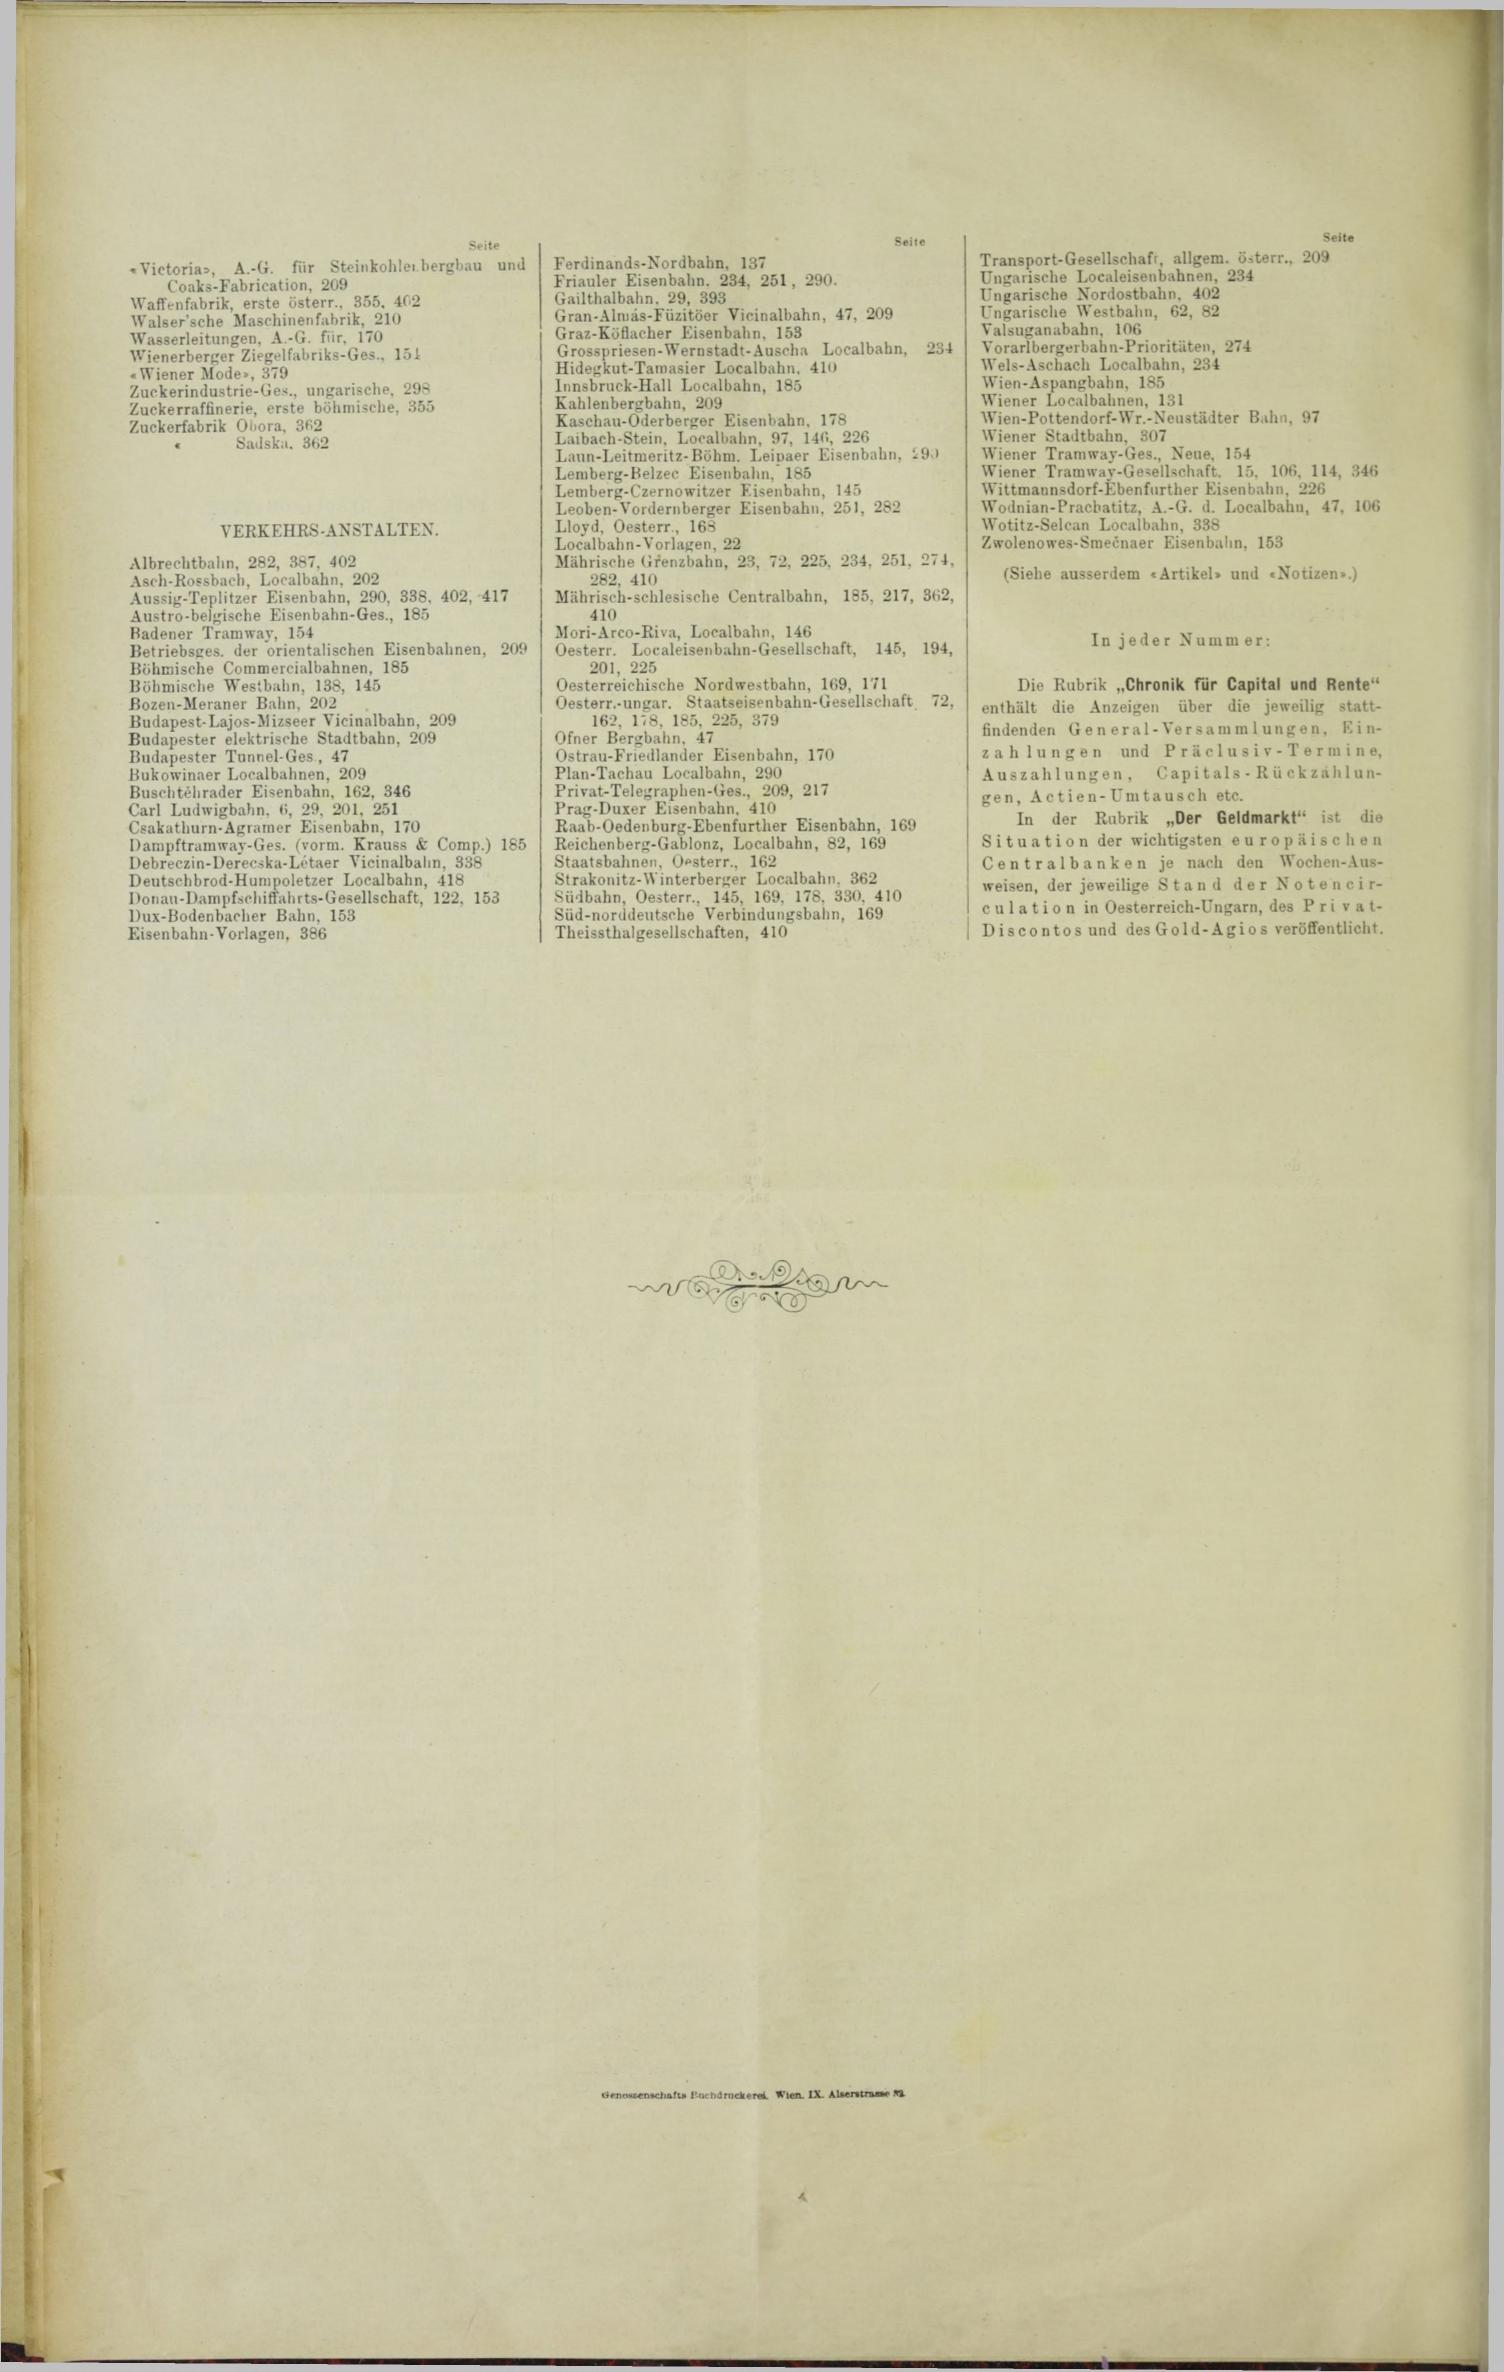 Der Tresor 08.06.1893 - Seite 12